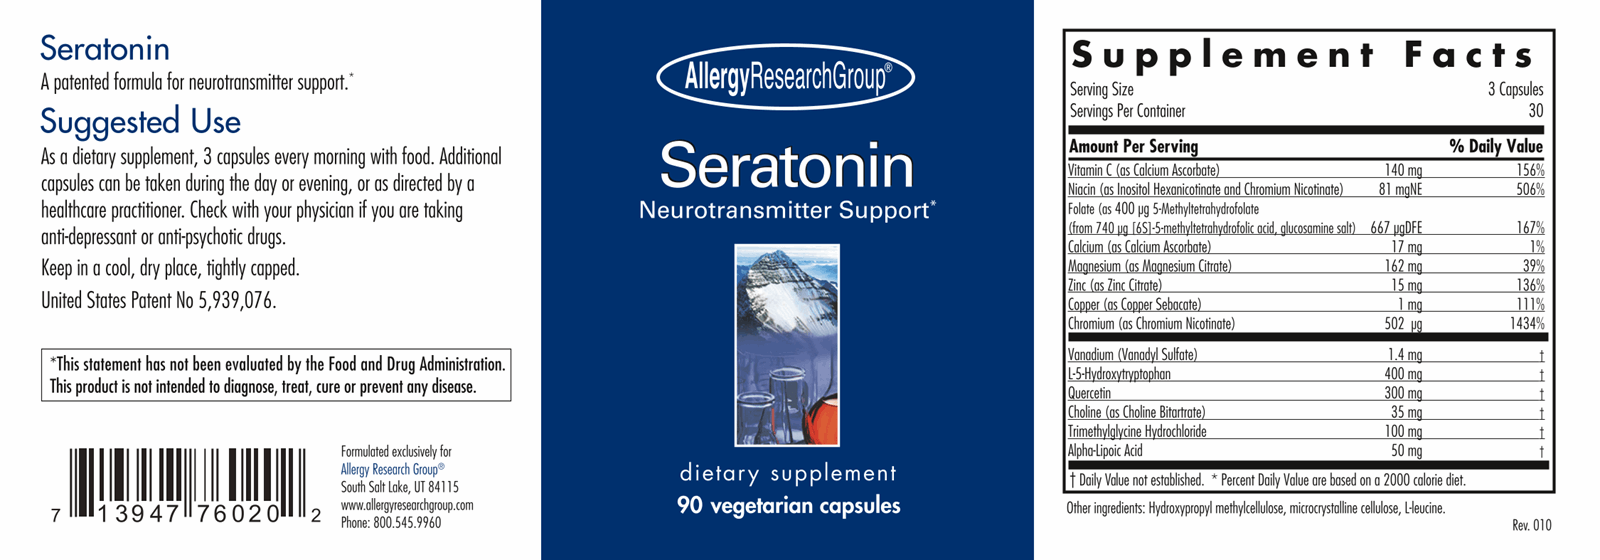 Seratonin